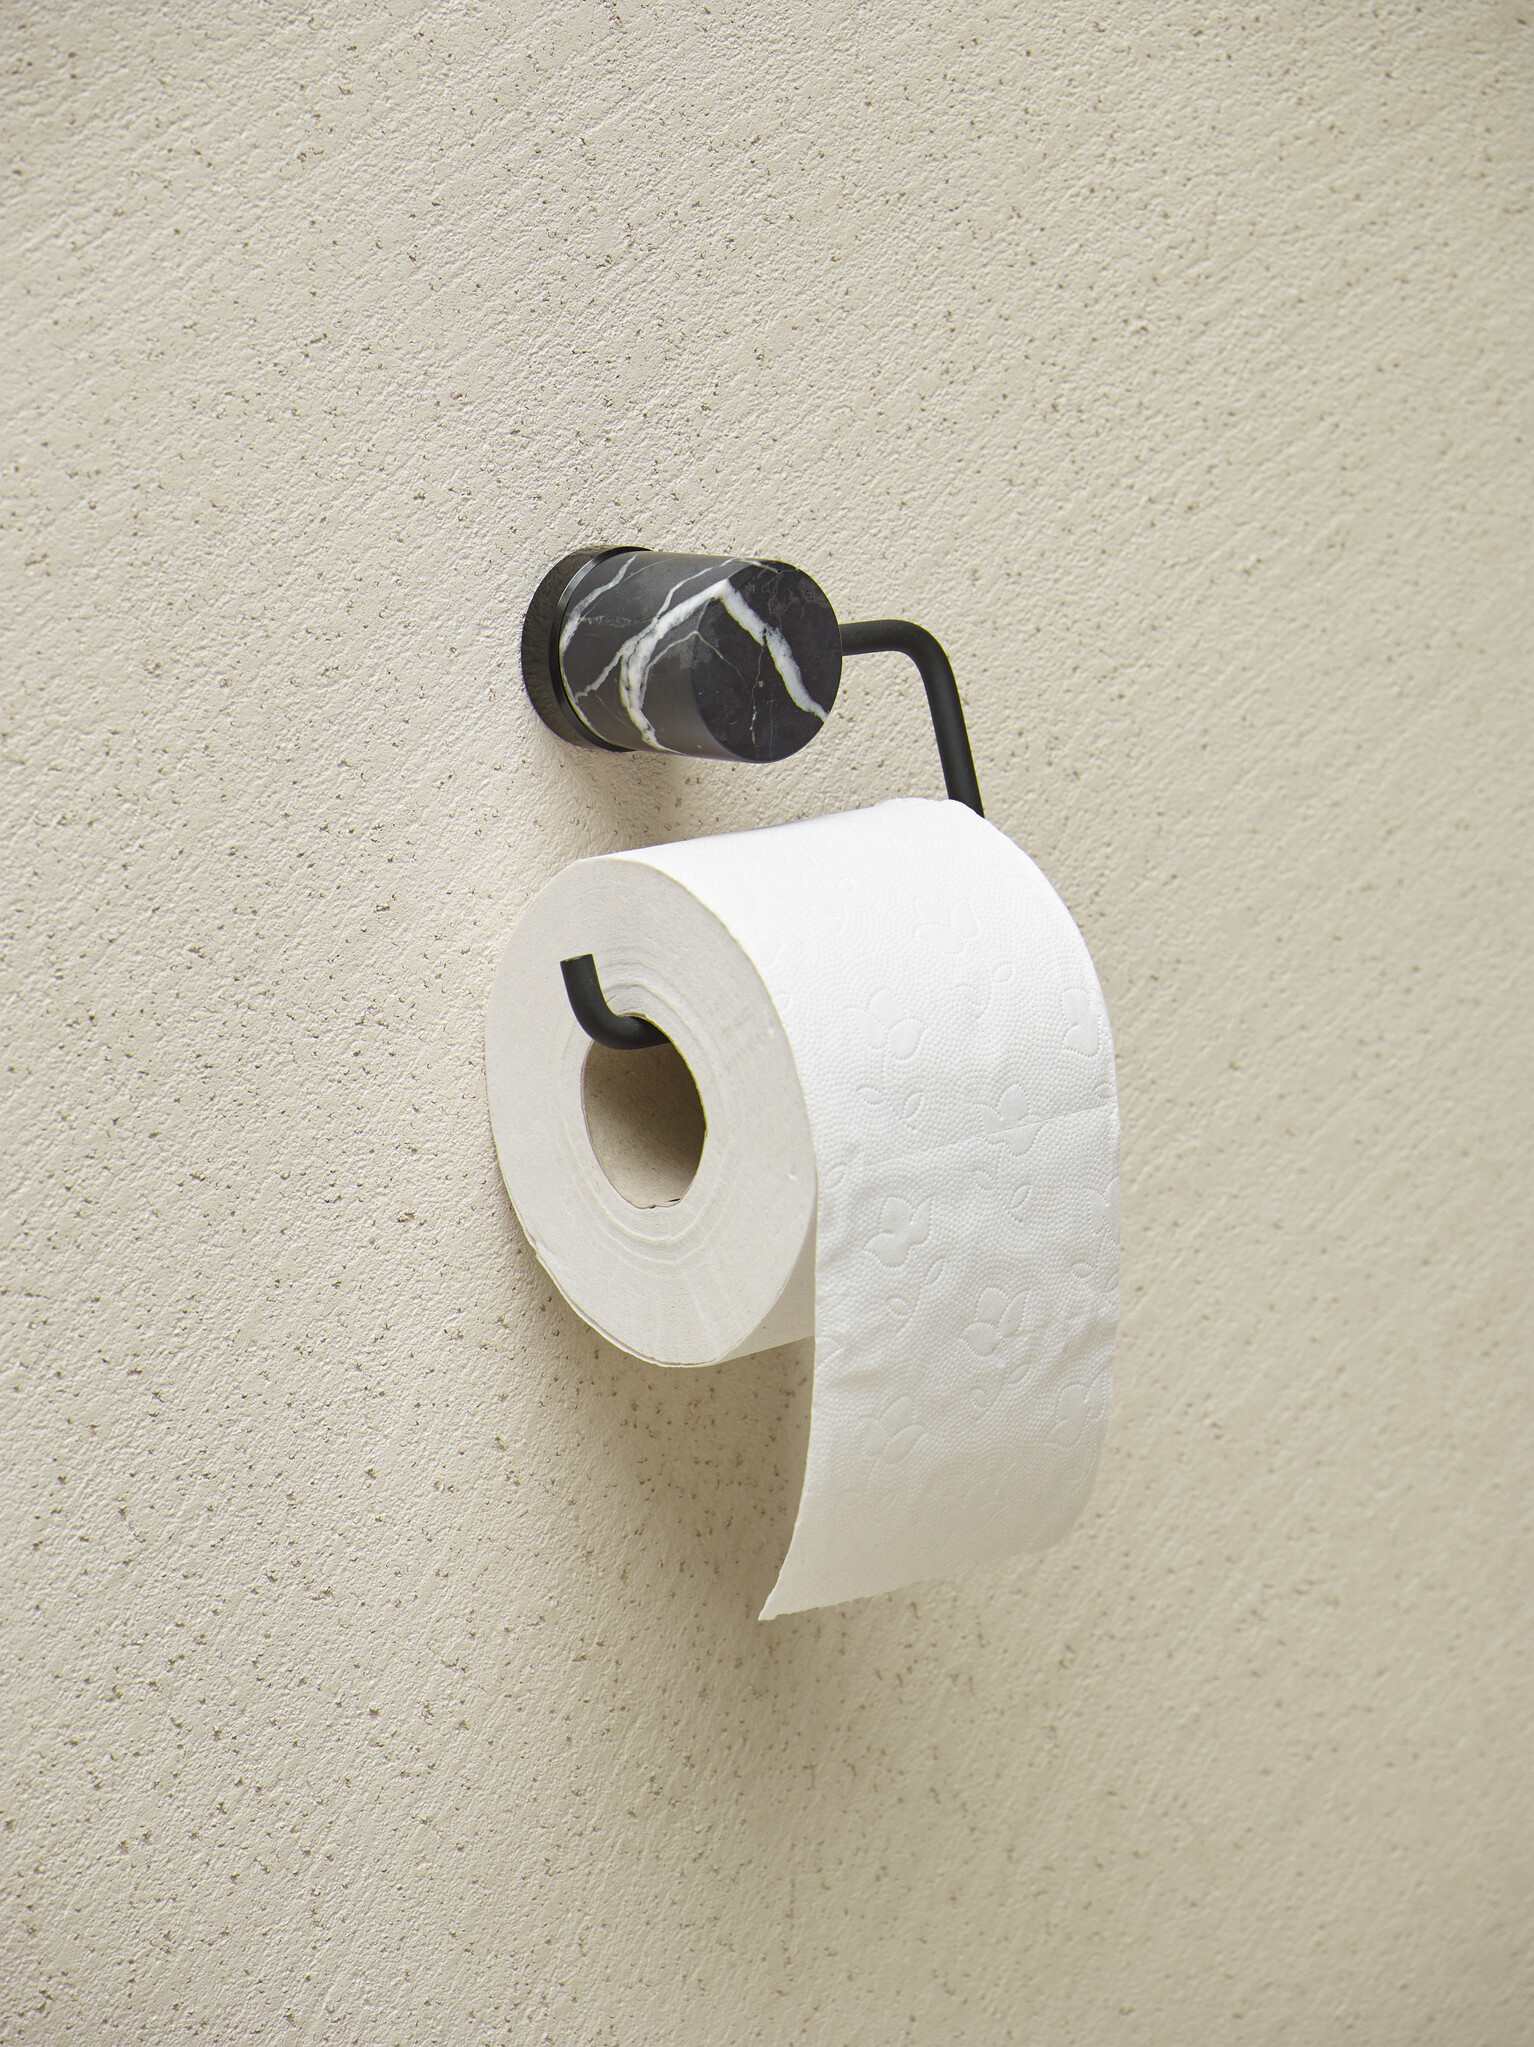 Porte-papier toilette noir, porte-rouleau de papier toilette en